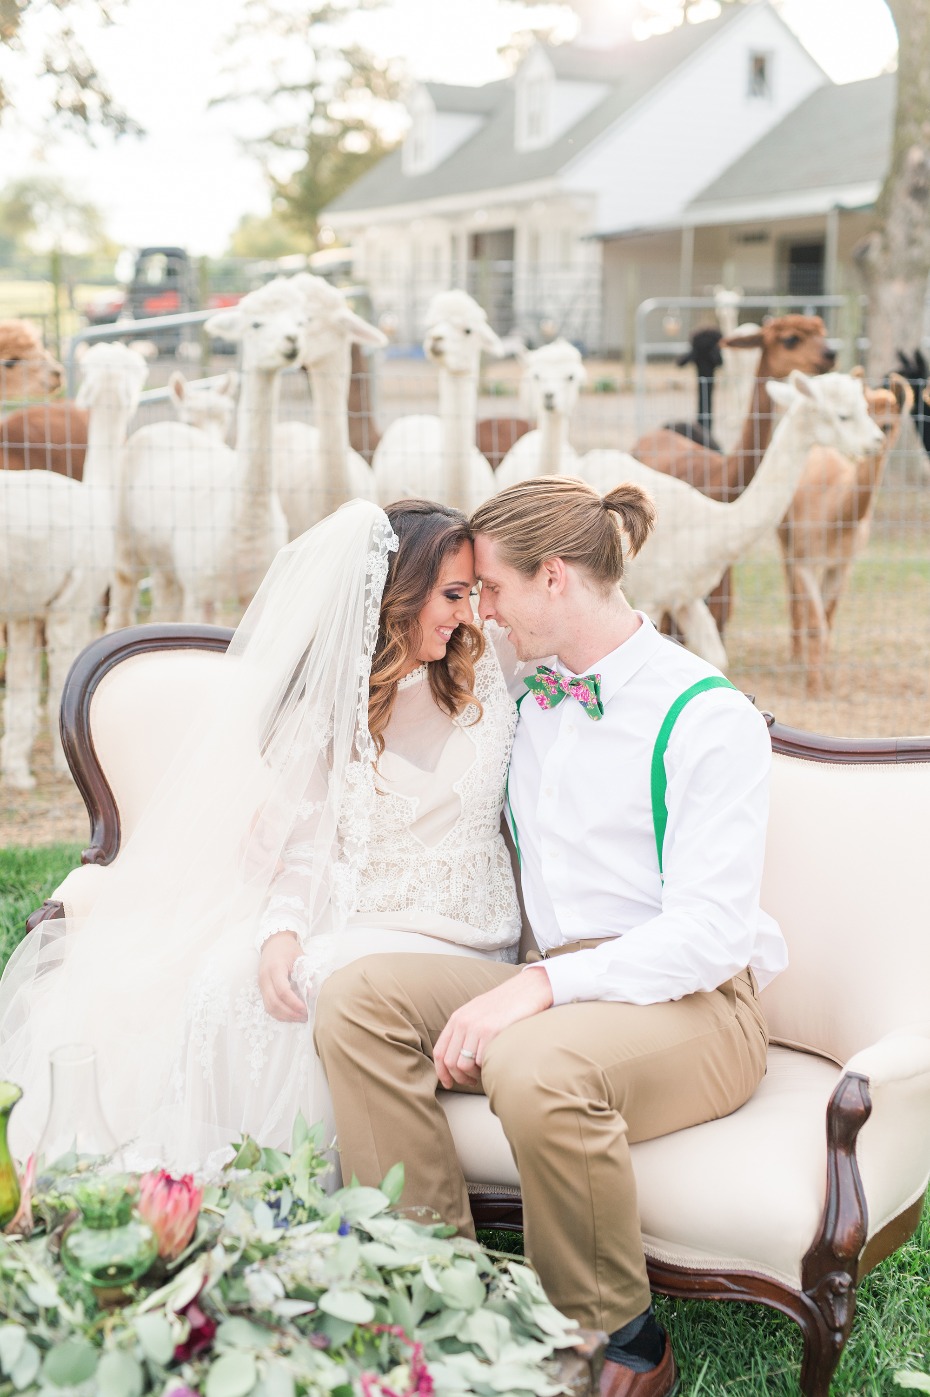 Get married on an Alpaca Farm